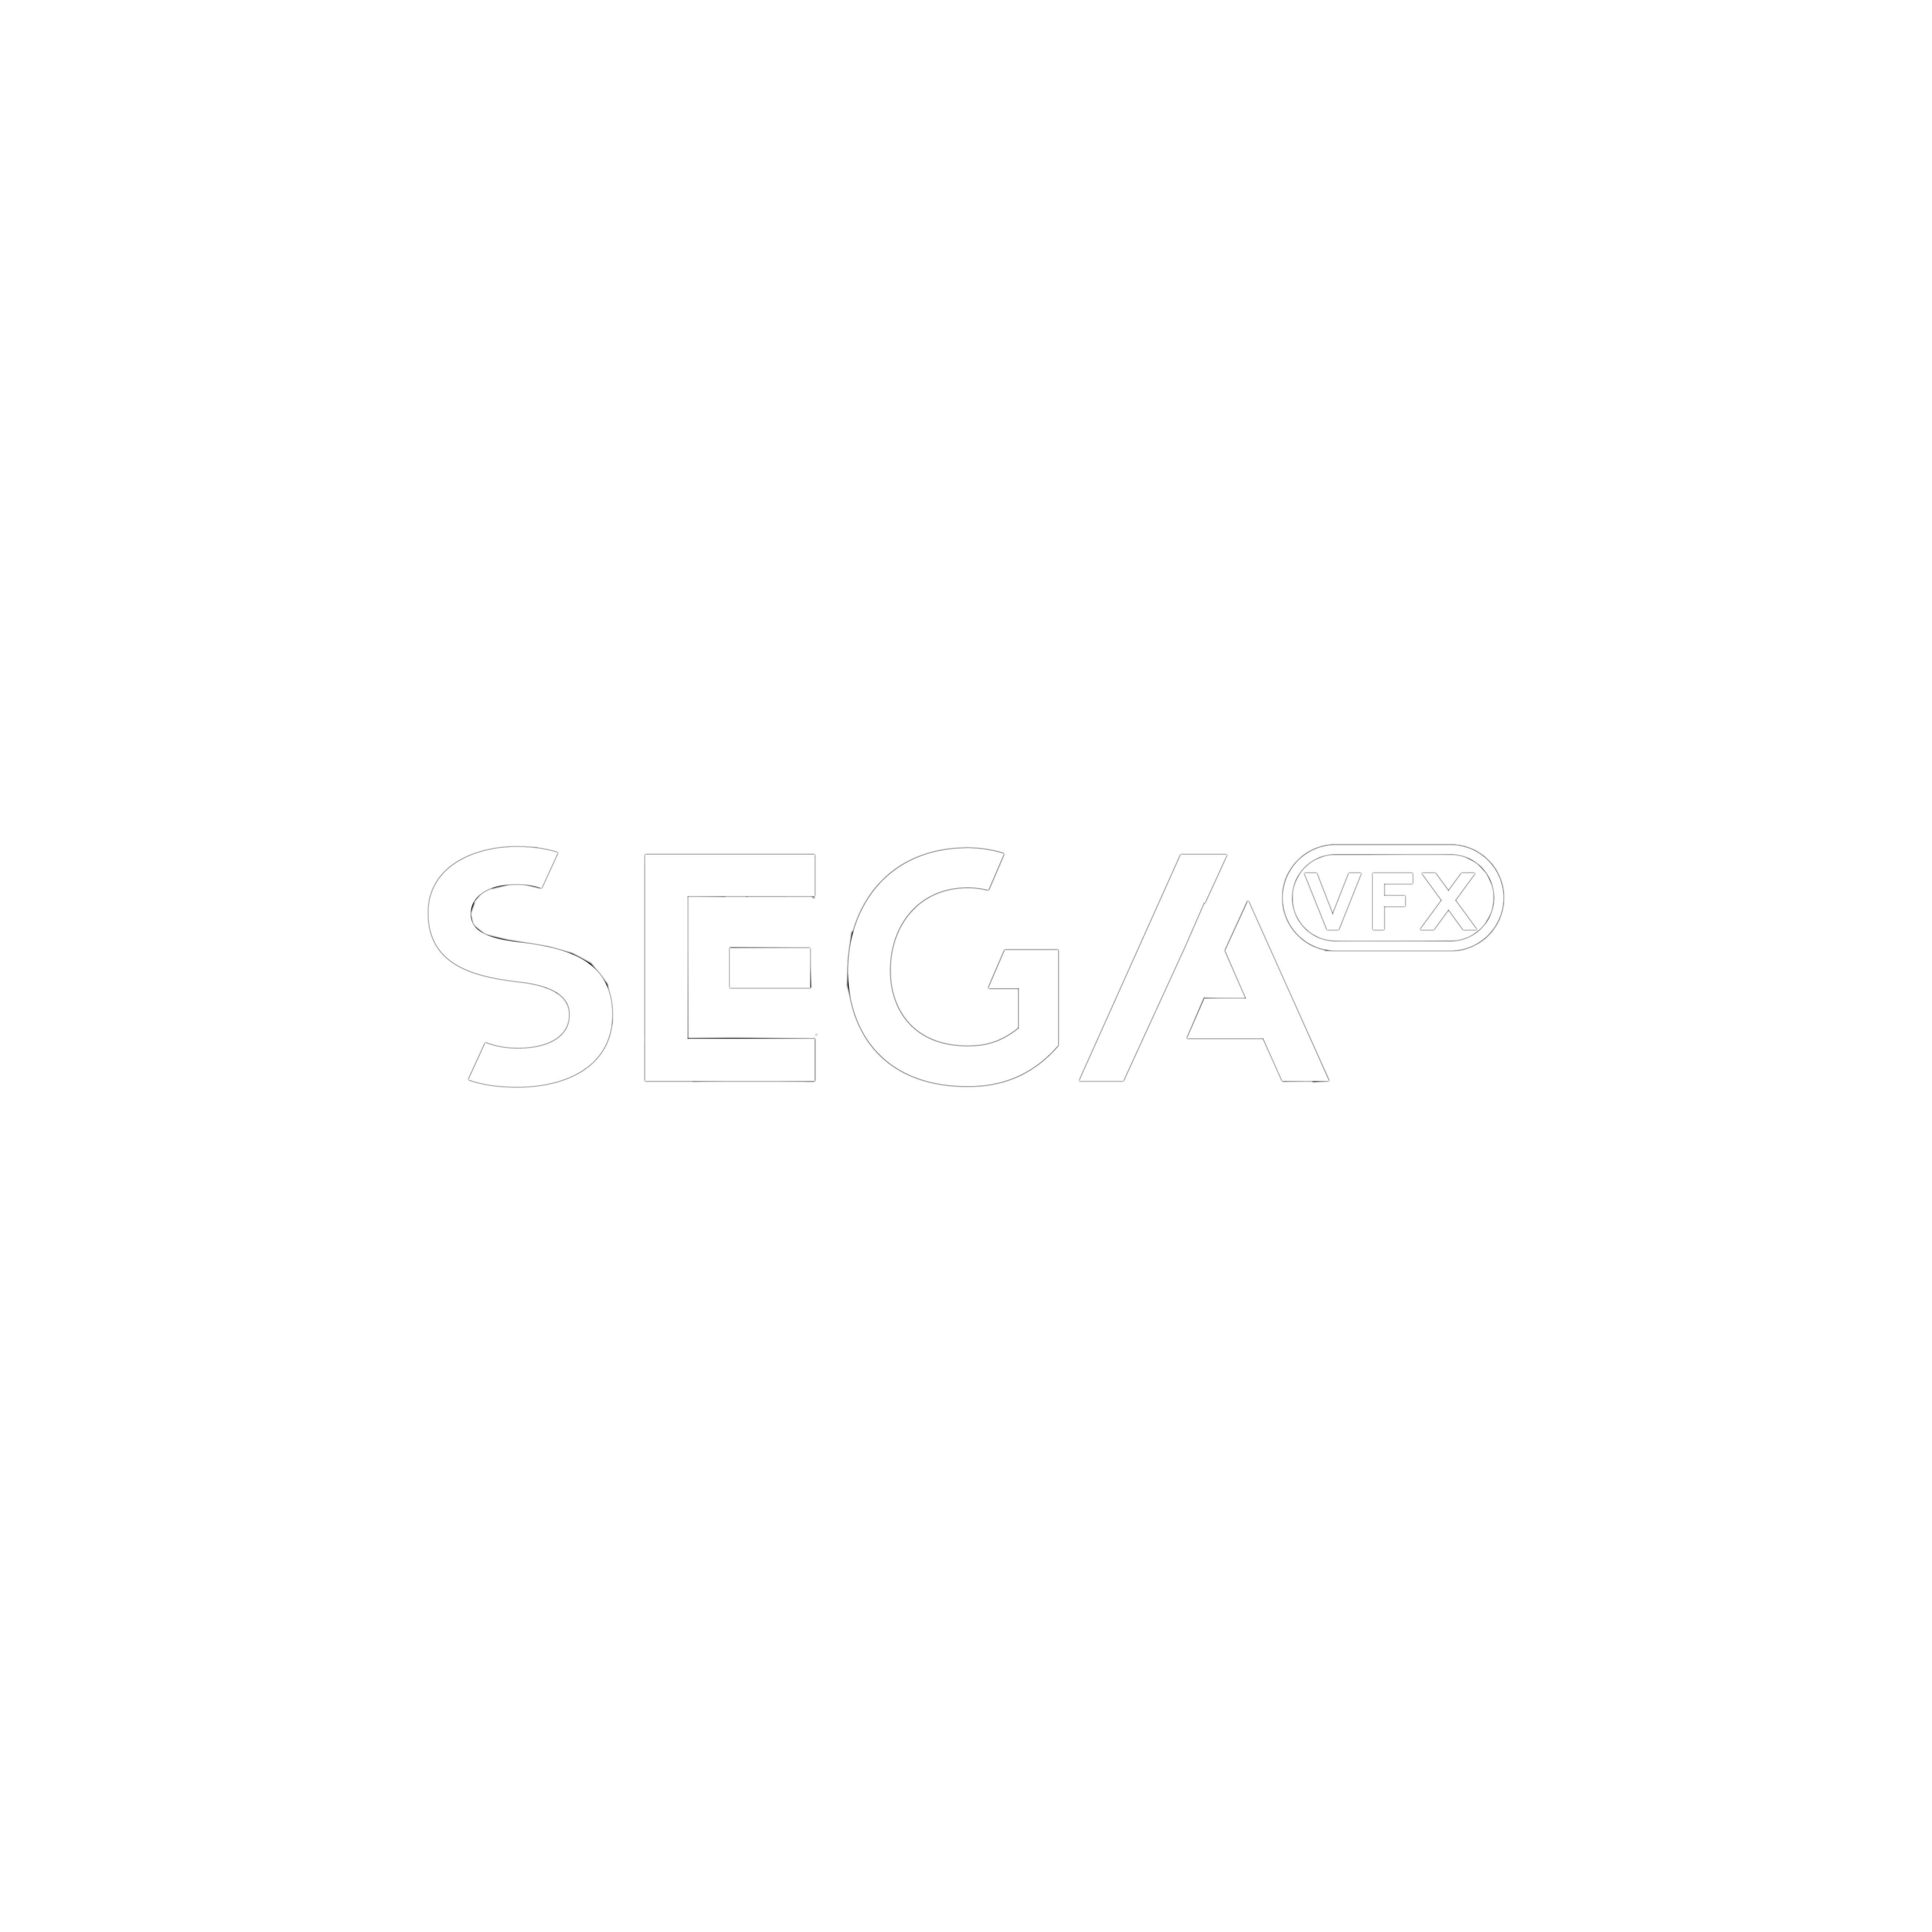 Sega VFX